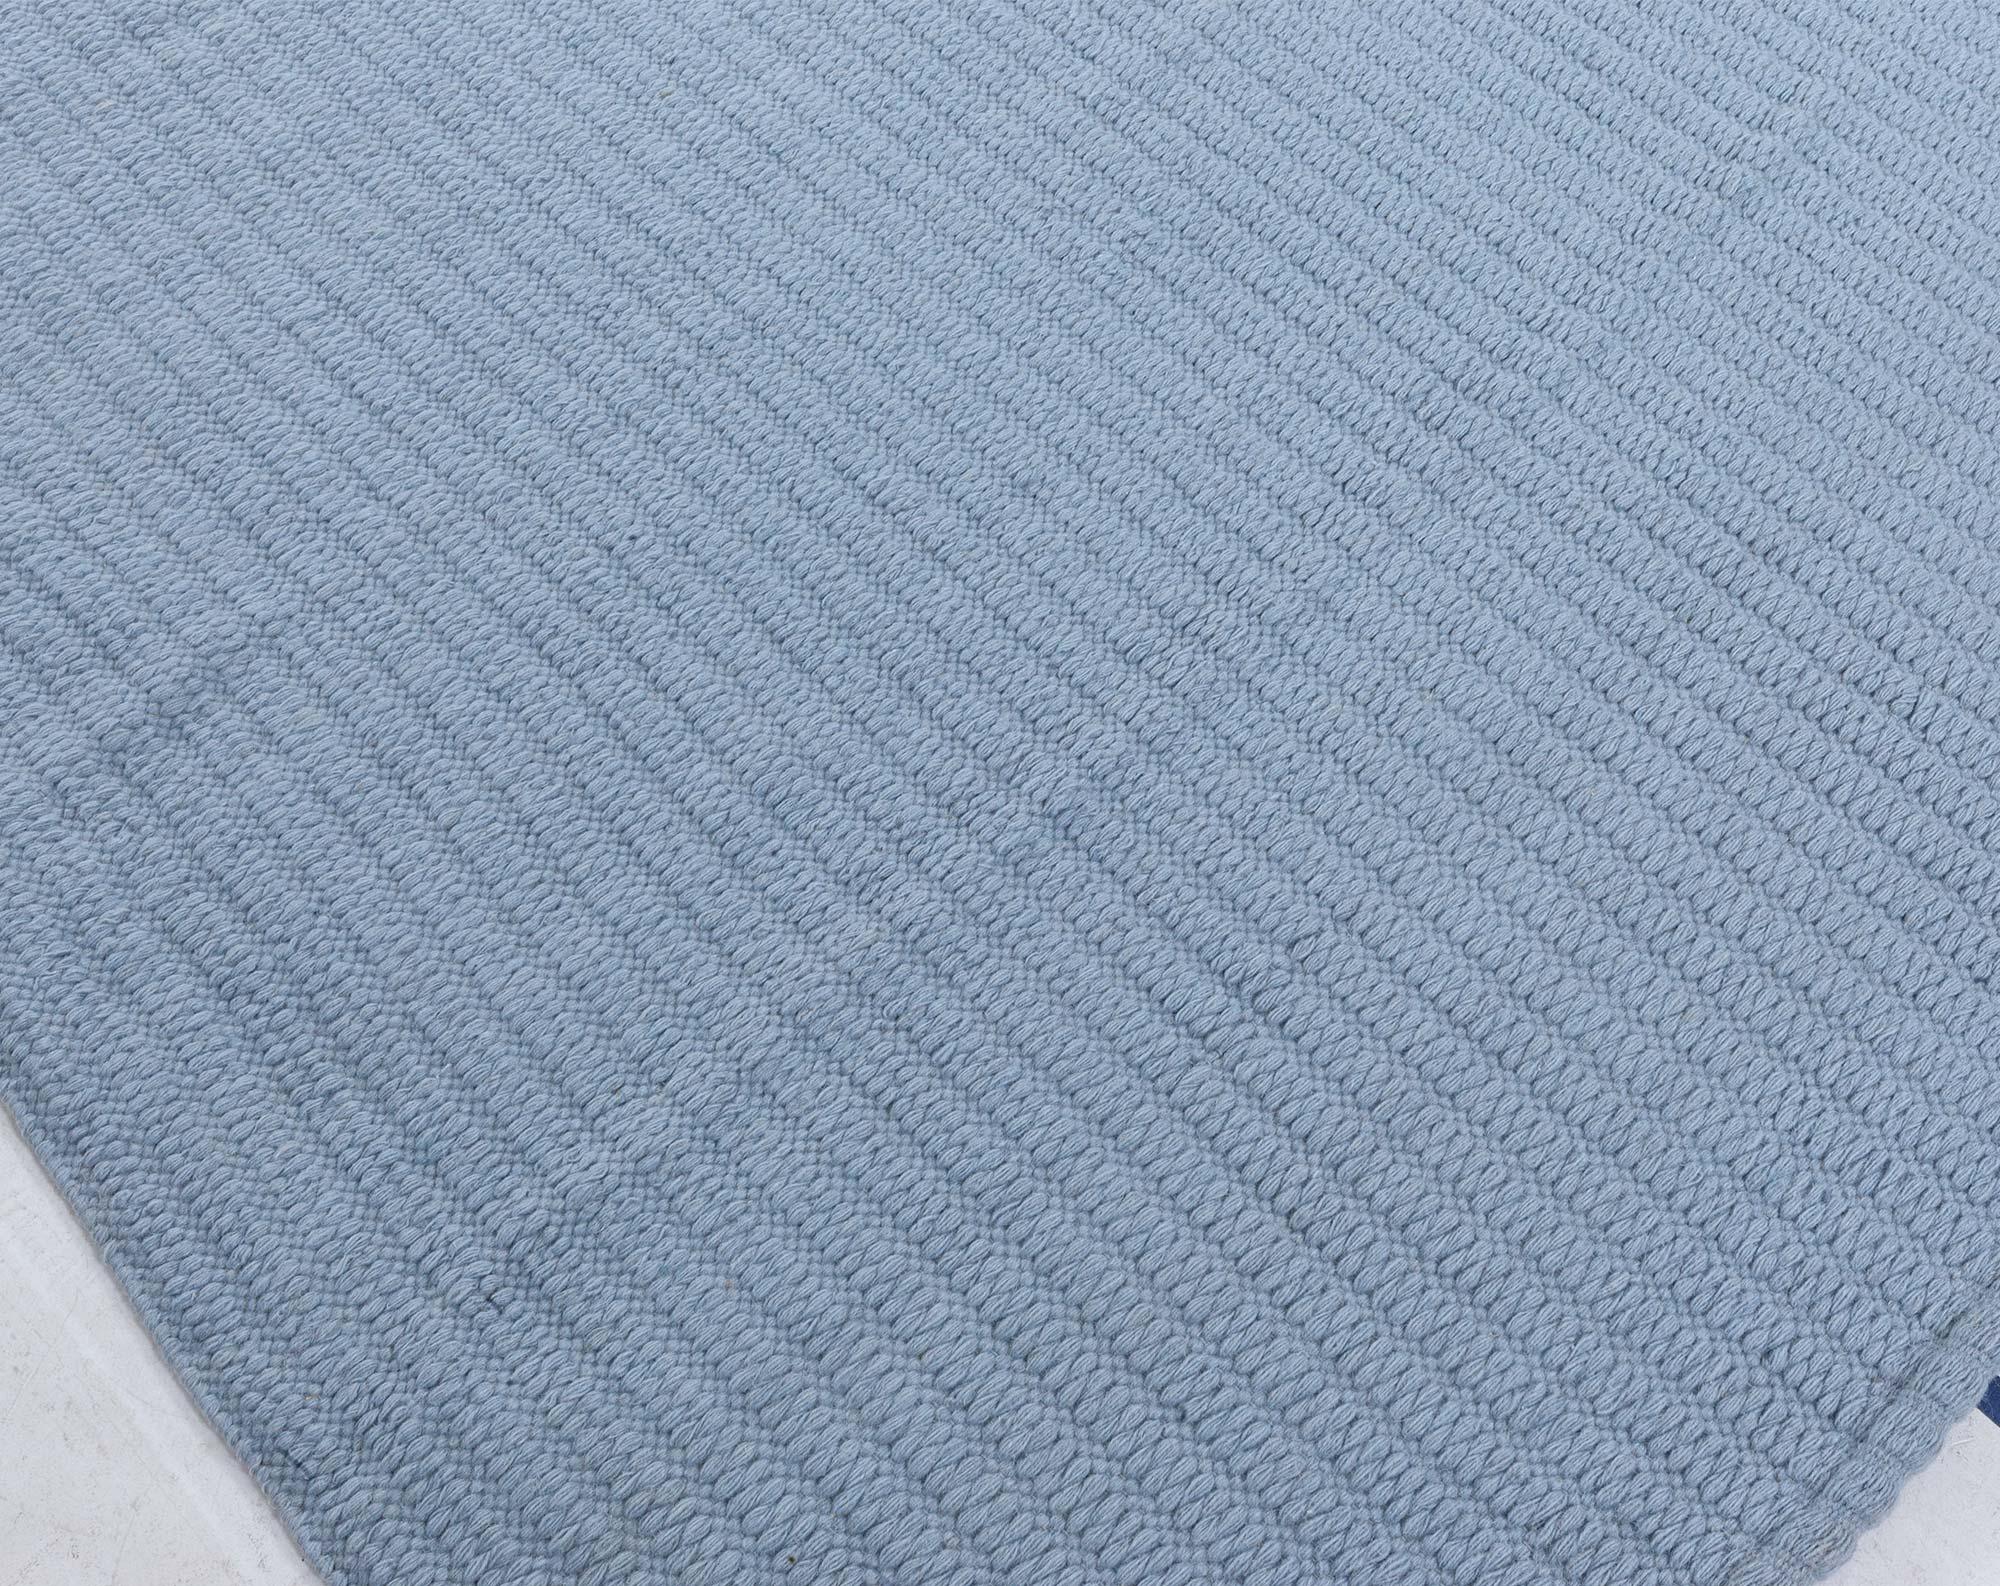 Modern Steel-blue Flat Weave Wool Rug 
Size: 13'0